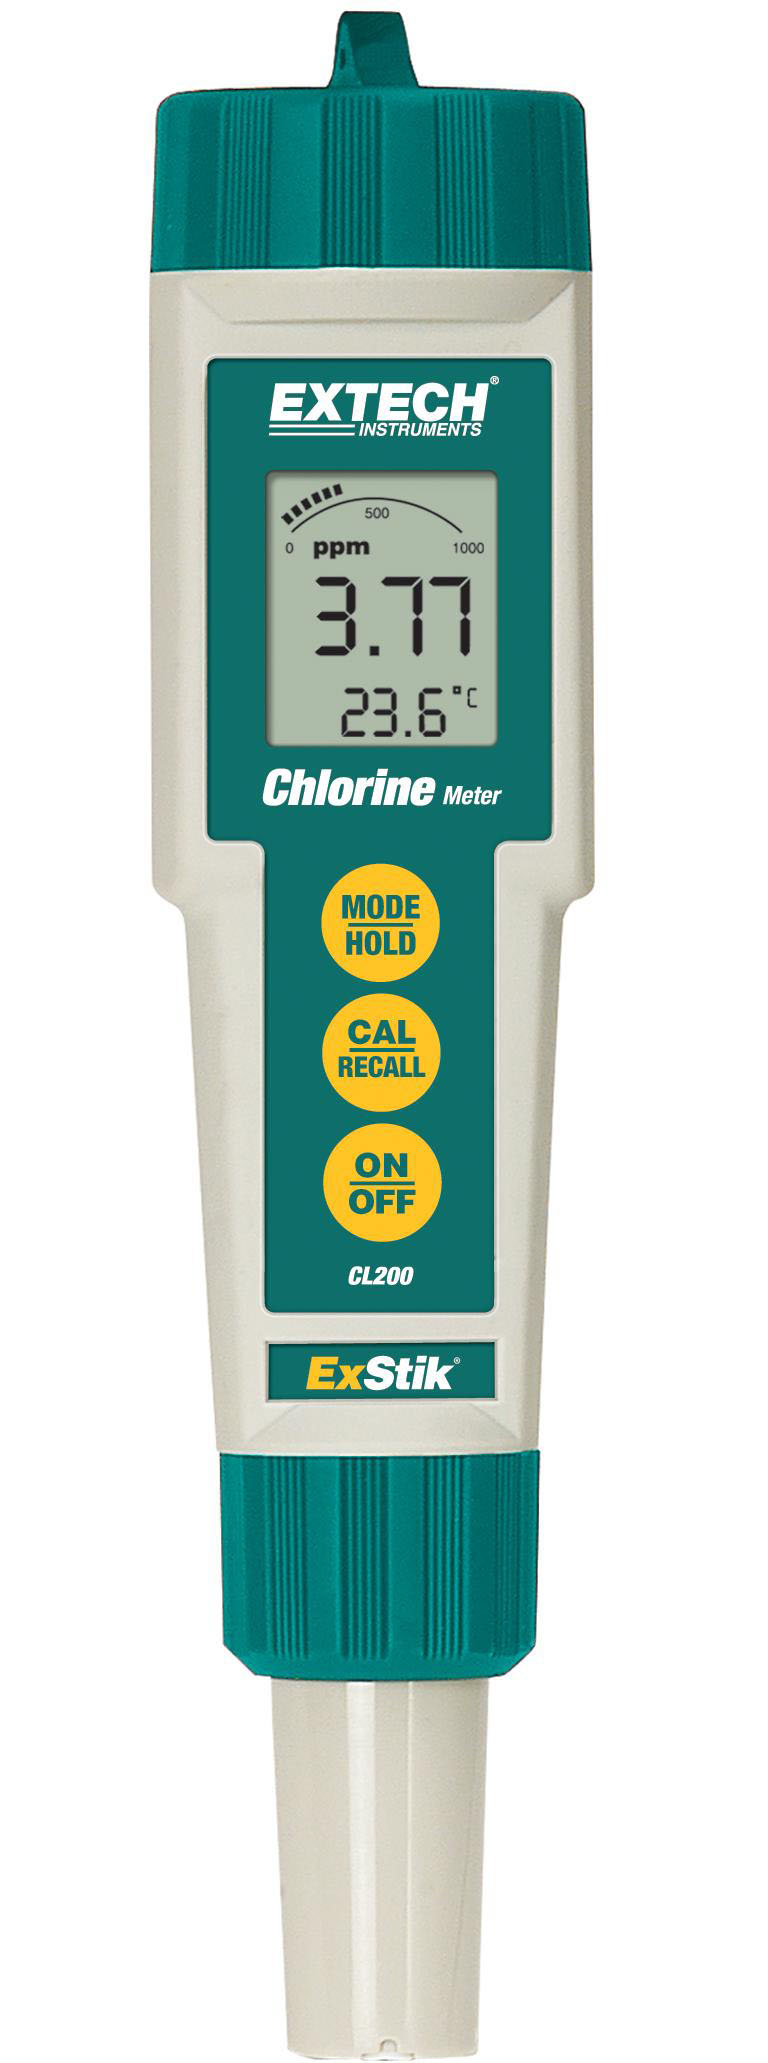 Chlorine Meters